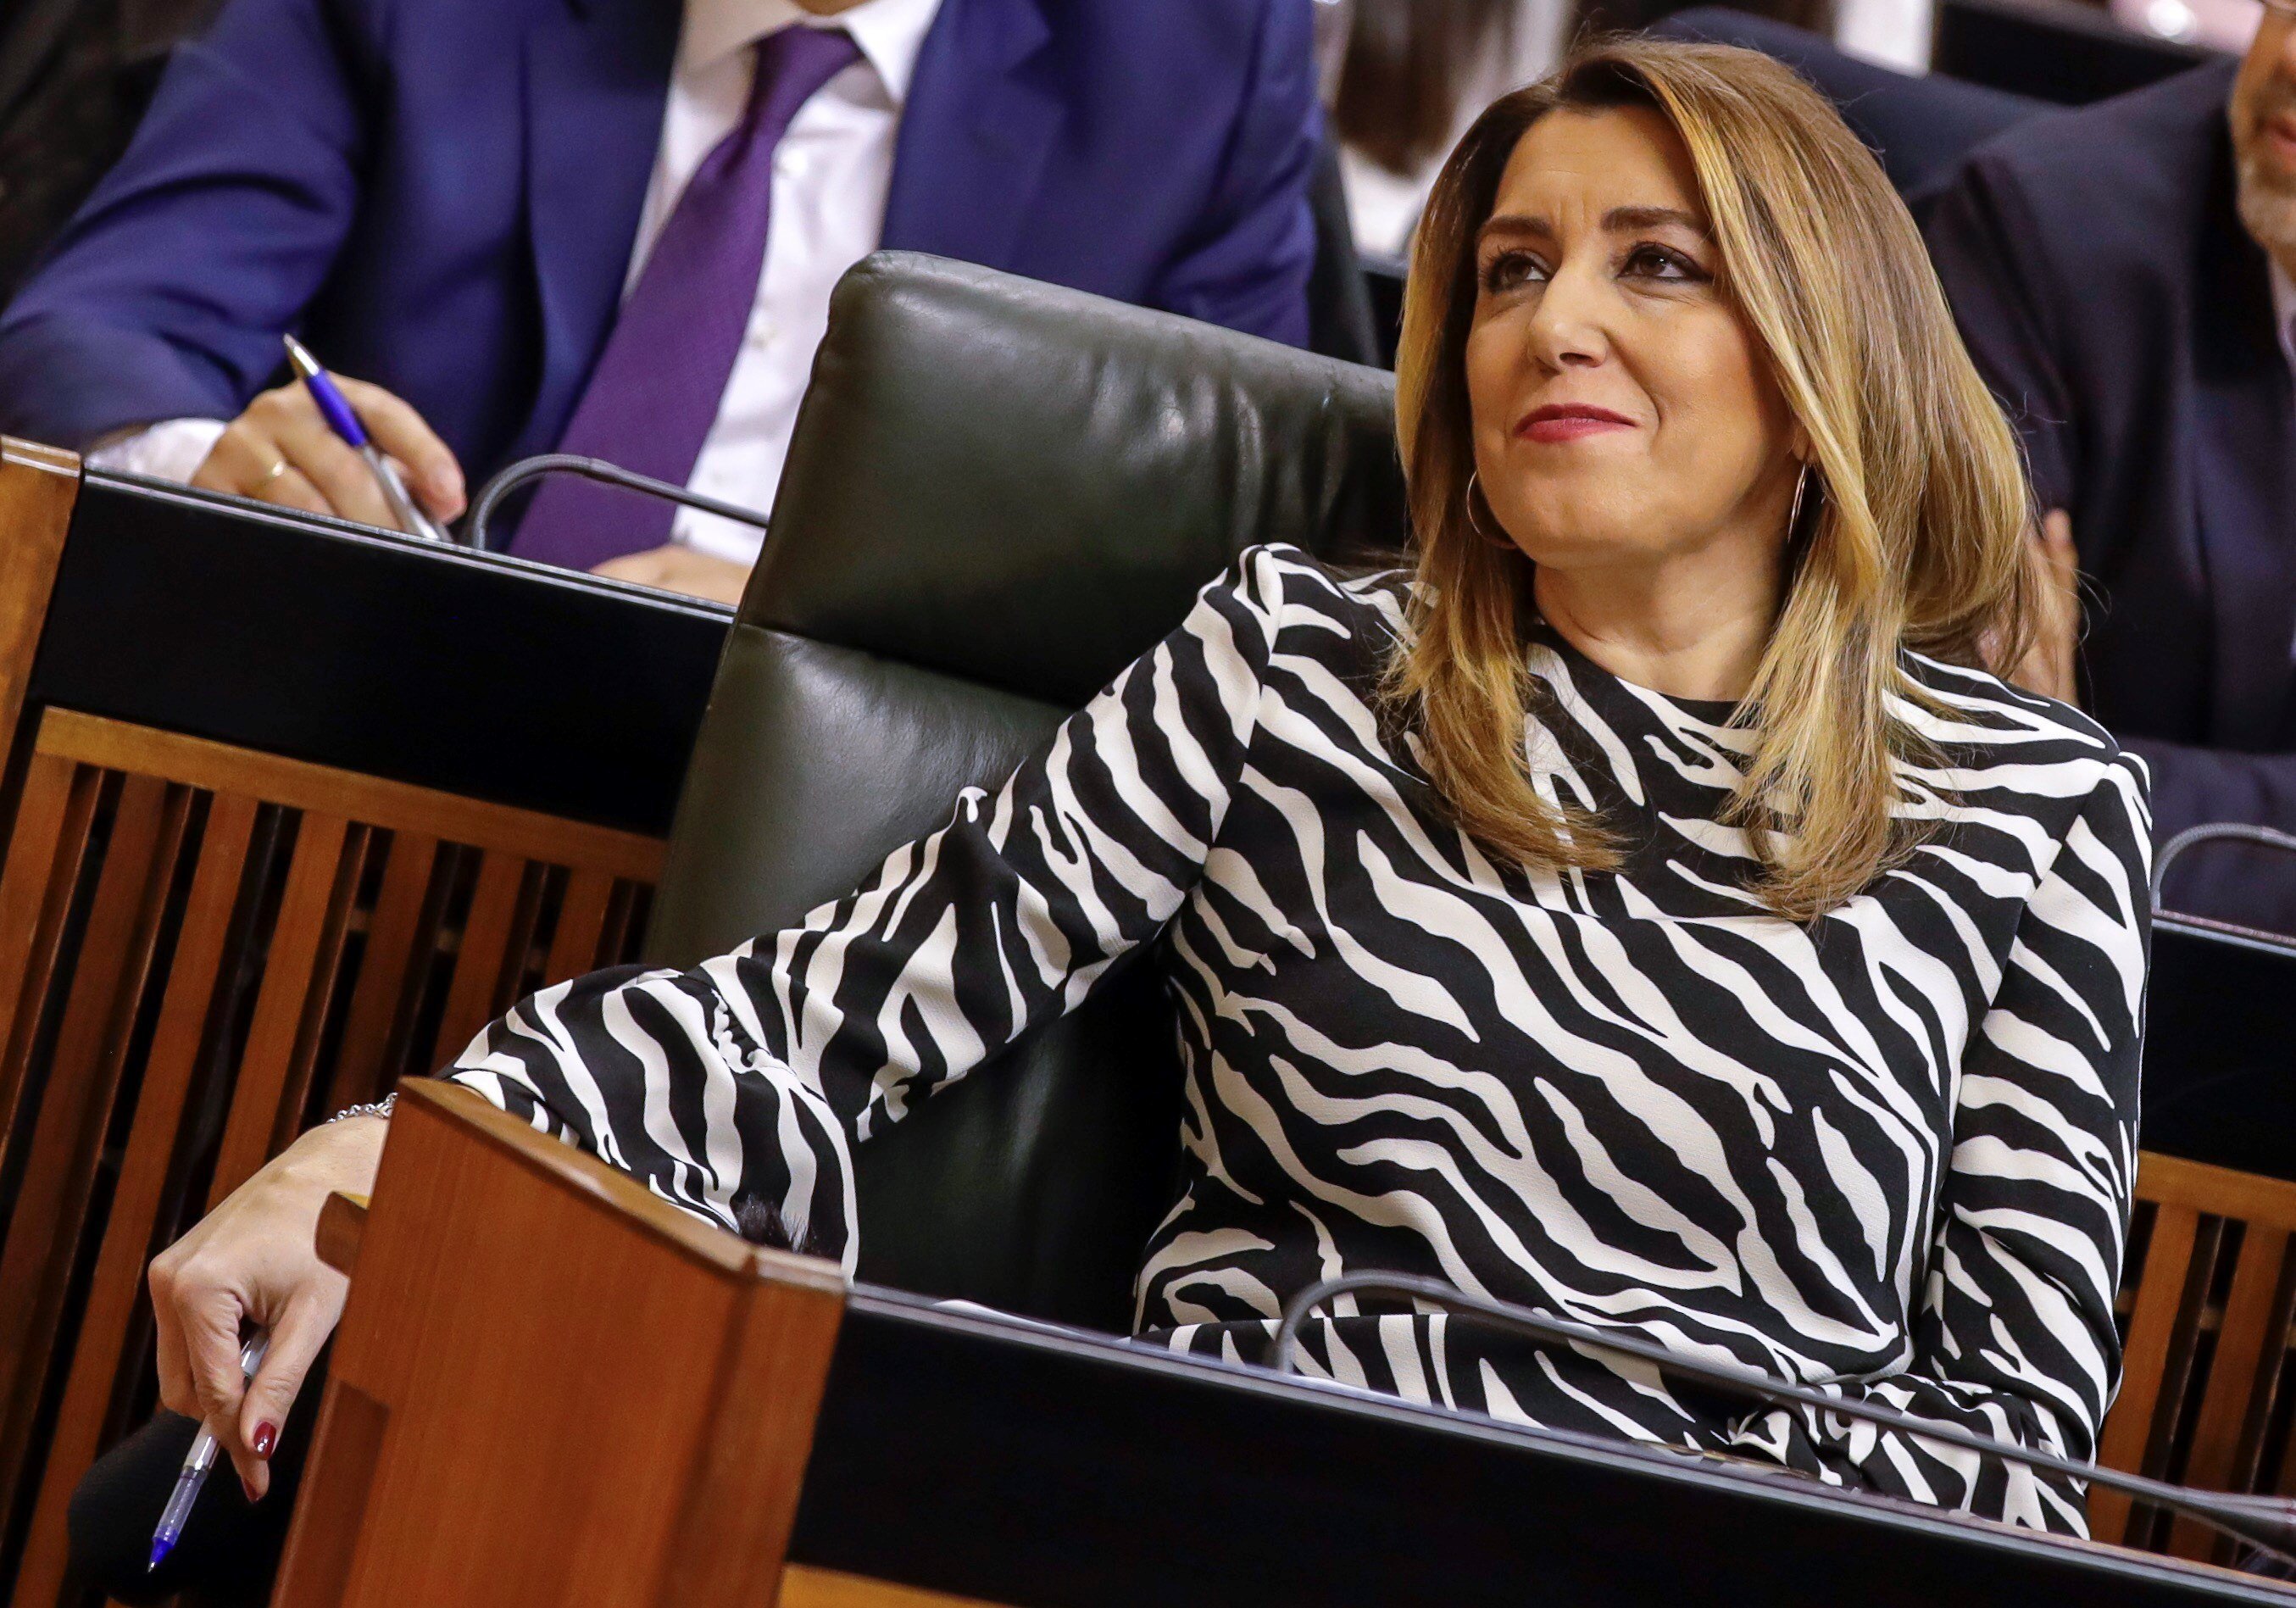 Susana Díaz avisa Moreno: “Accedirà a la Junta amb els hereus del franquisme”